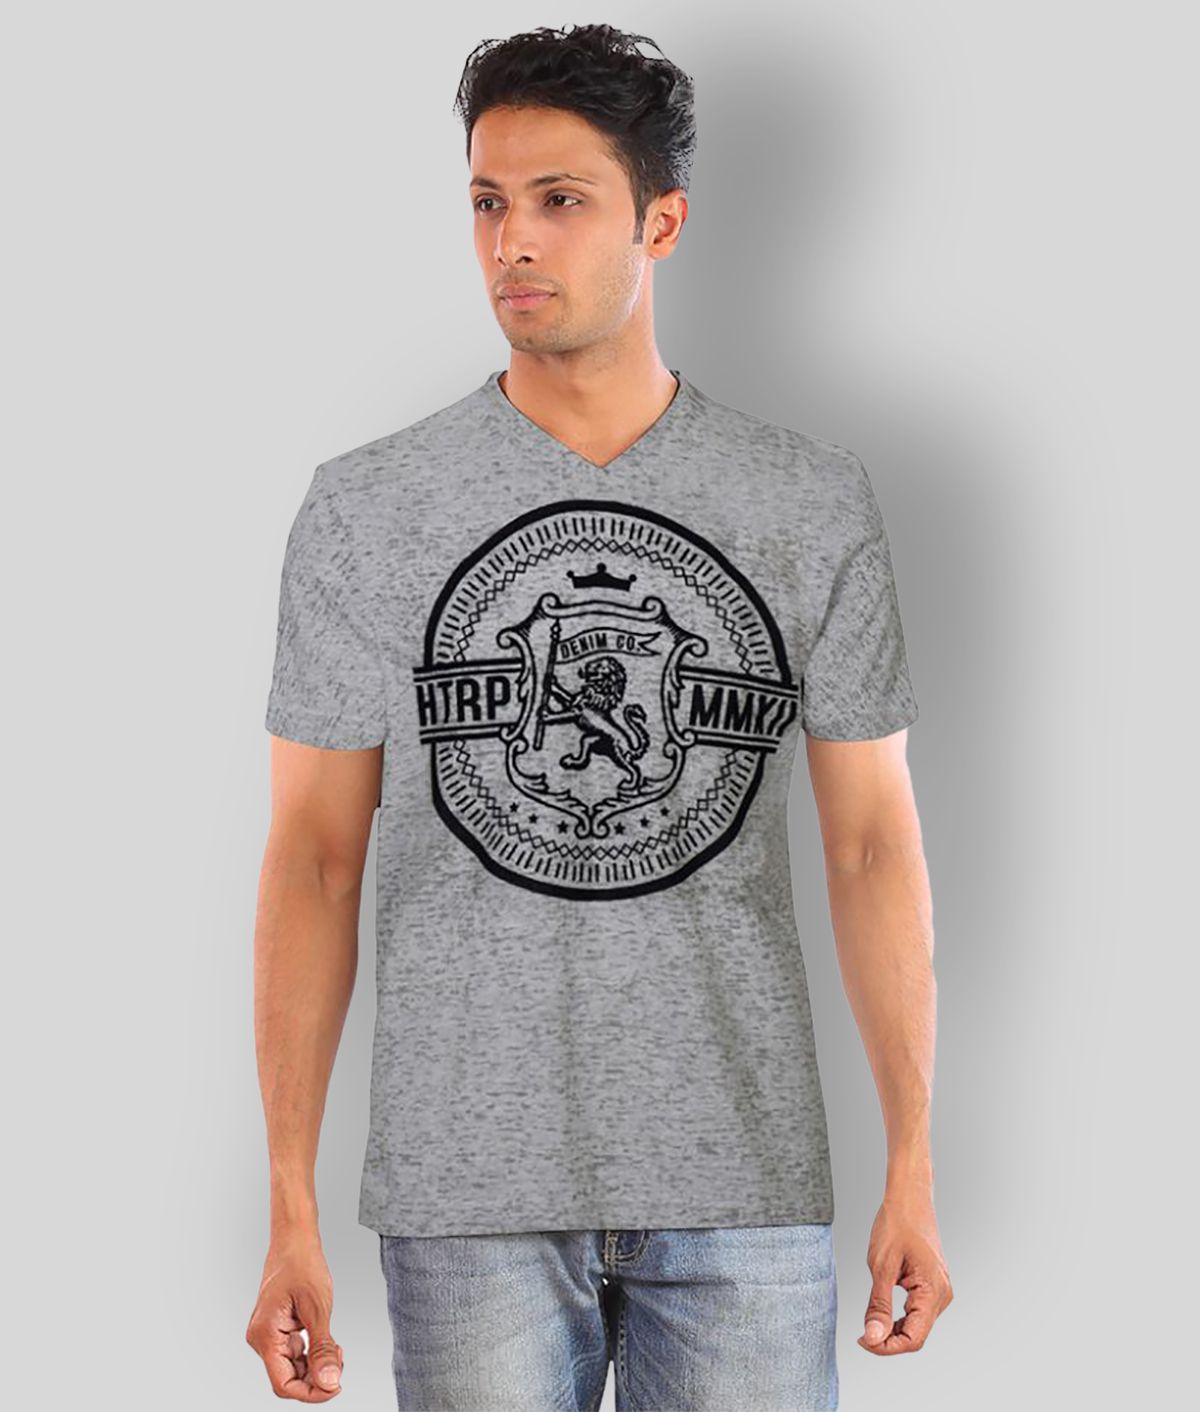     			Huetrap - Light Grey Cotton Regular Fit Men's T-Shirt ( Pack of 1 )